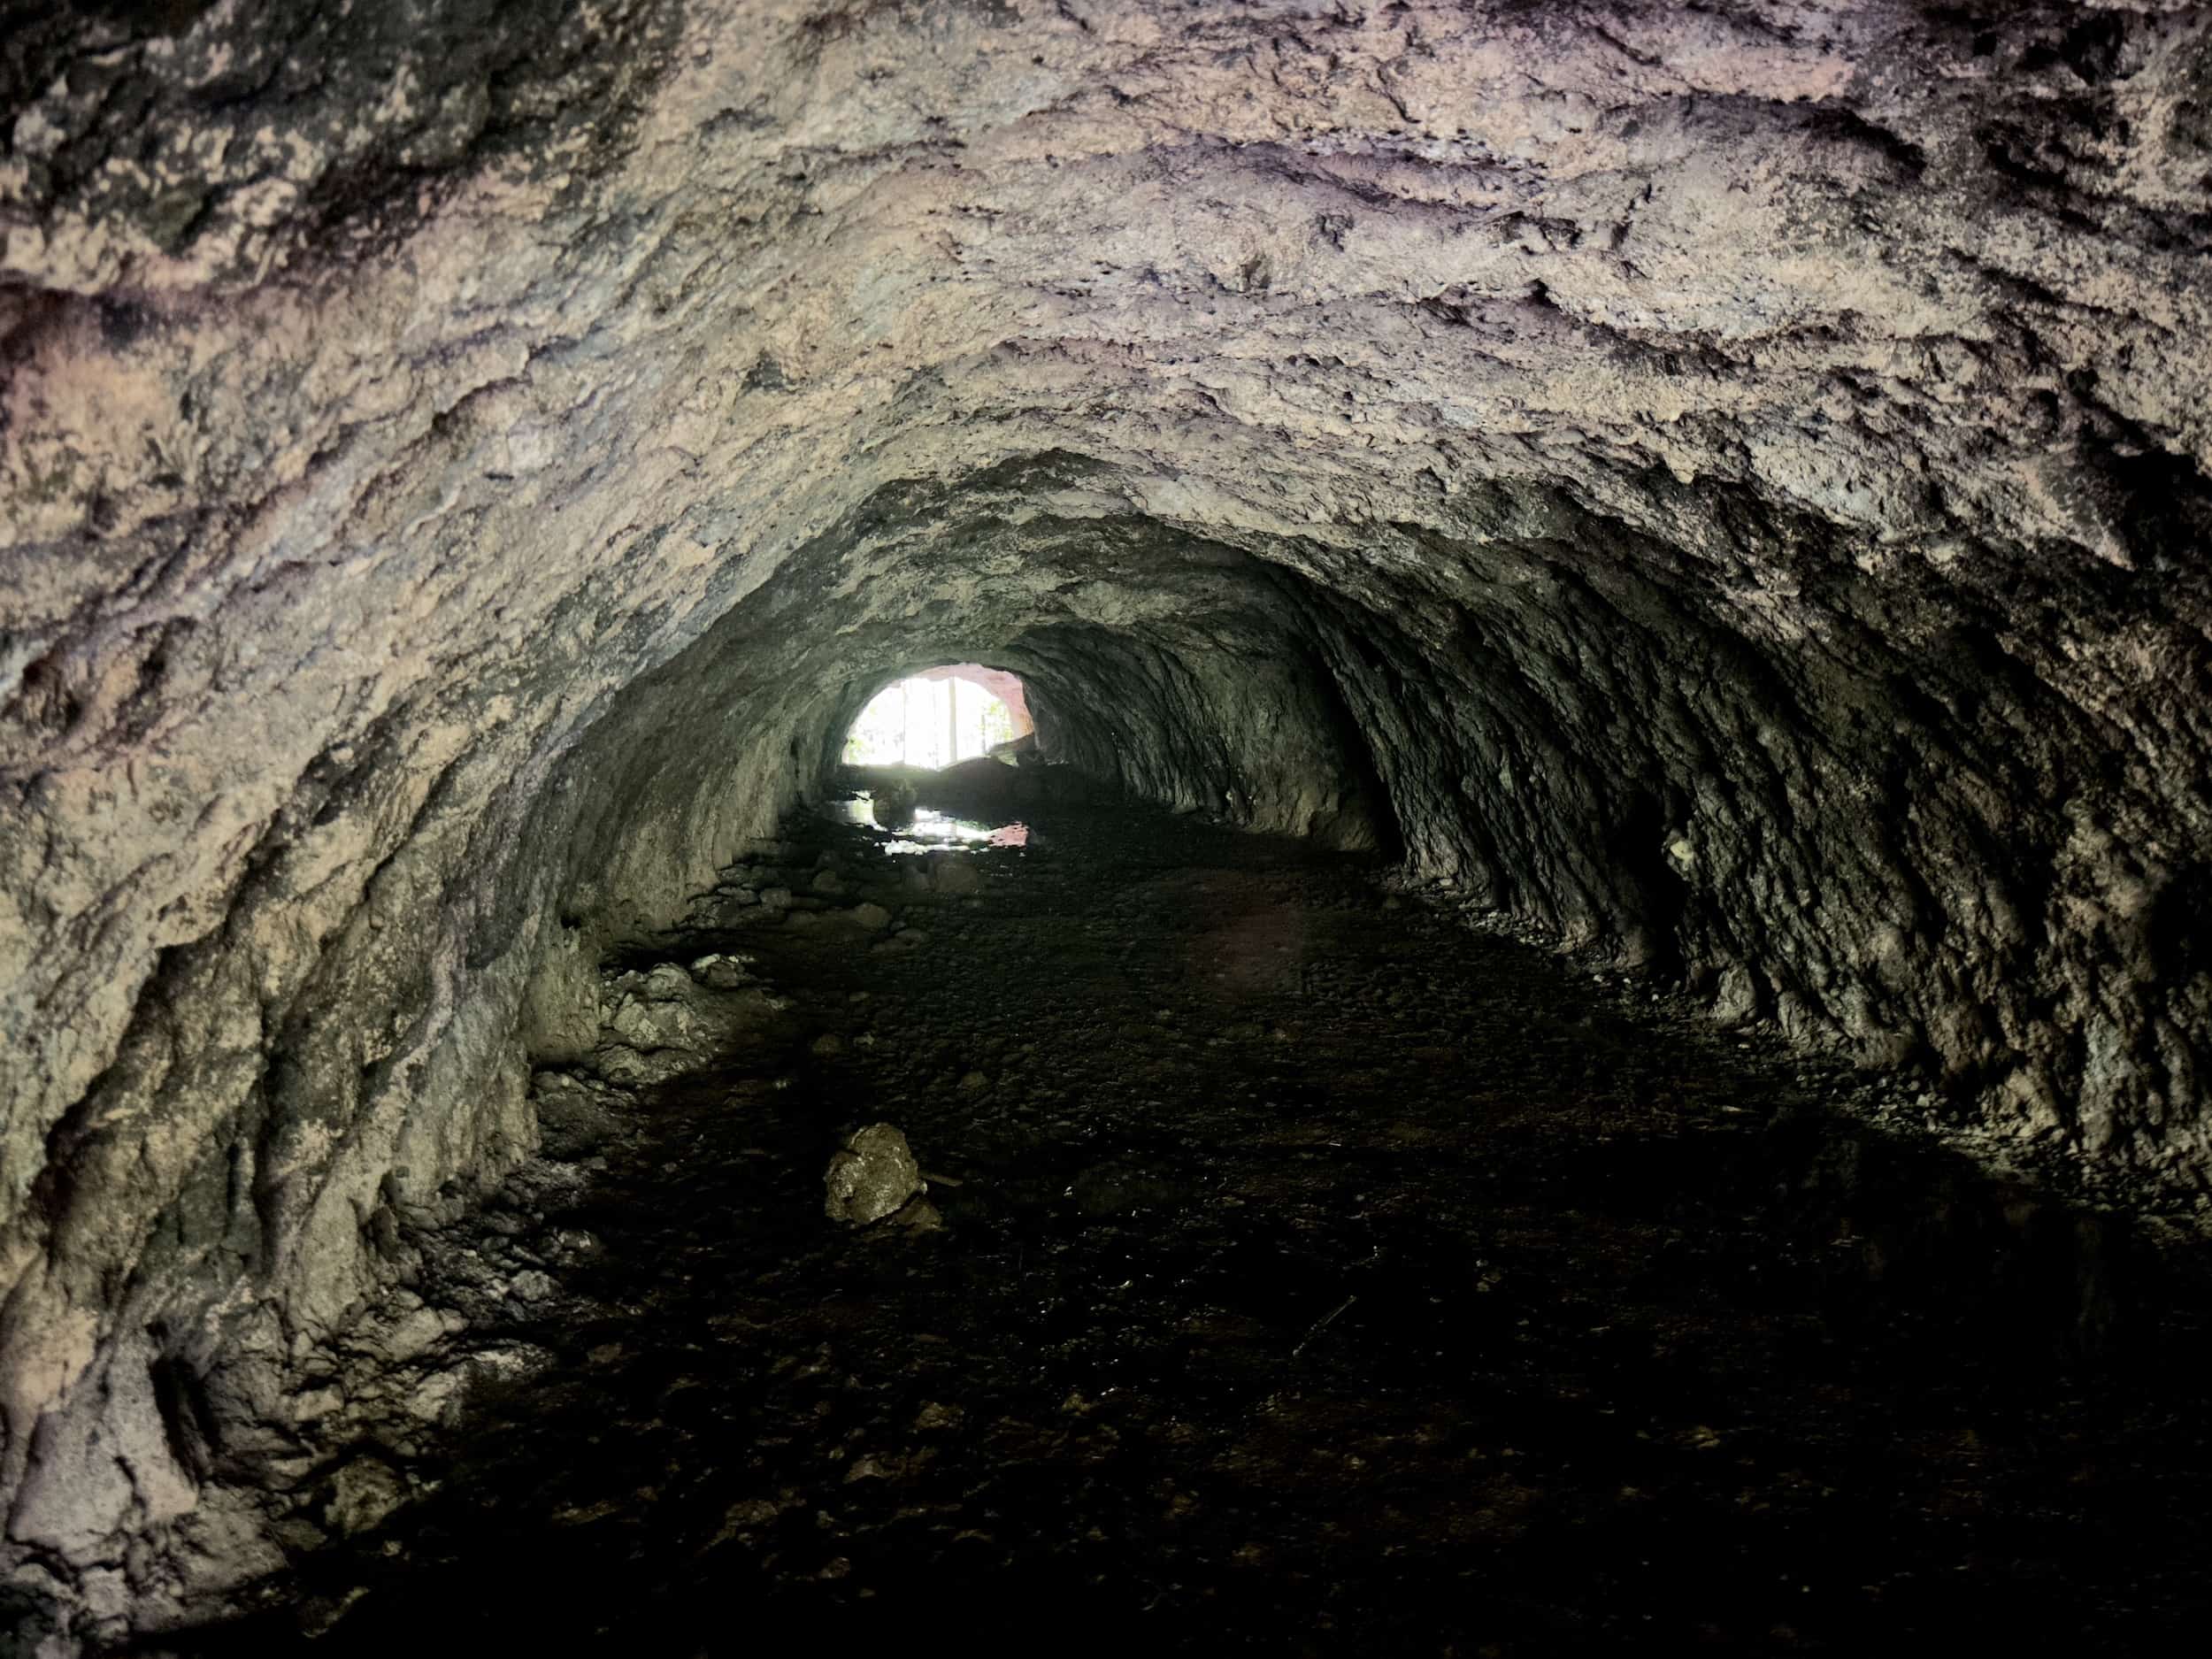 Looking through the cave at Santa Rita Nature Reserve in Boquía, Salento, Quindío, Colombia